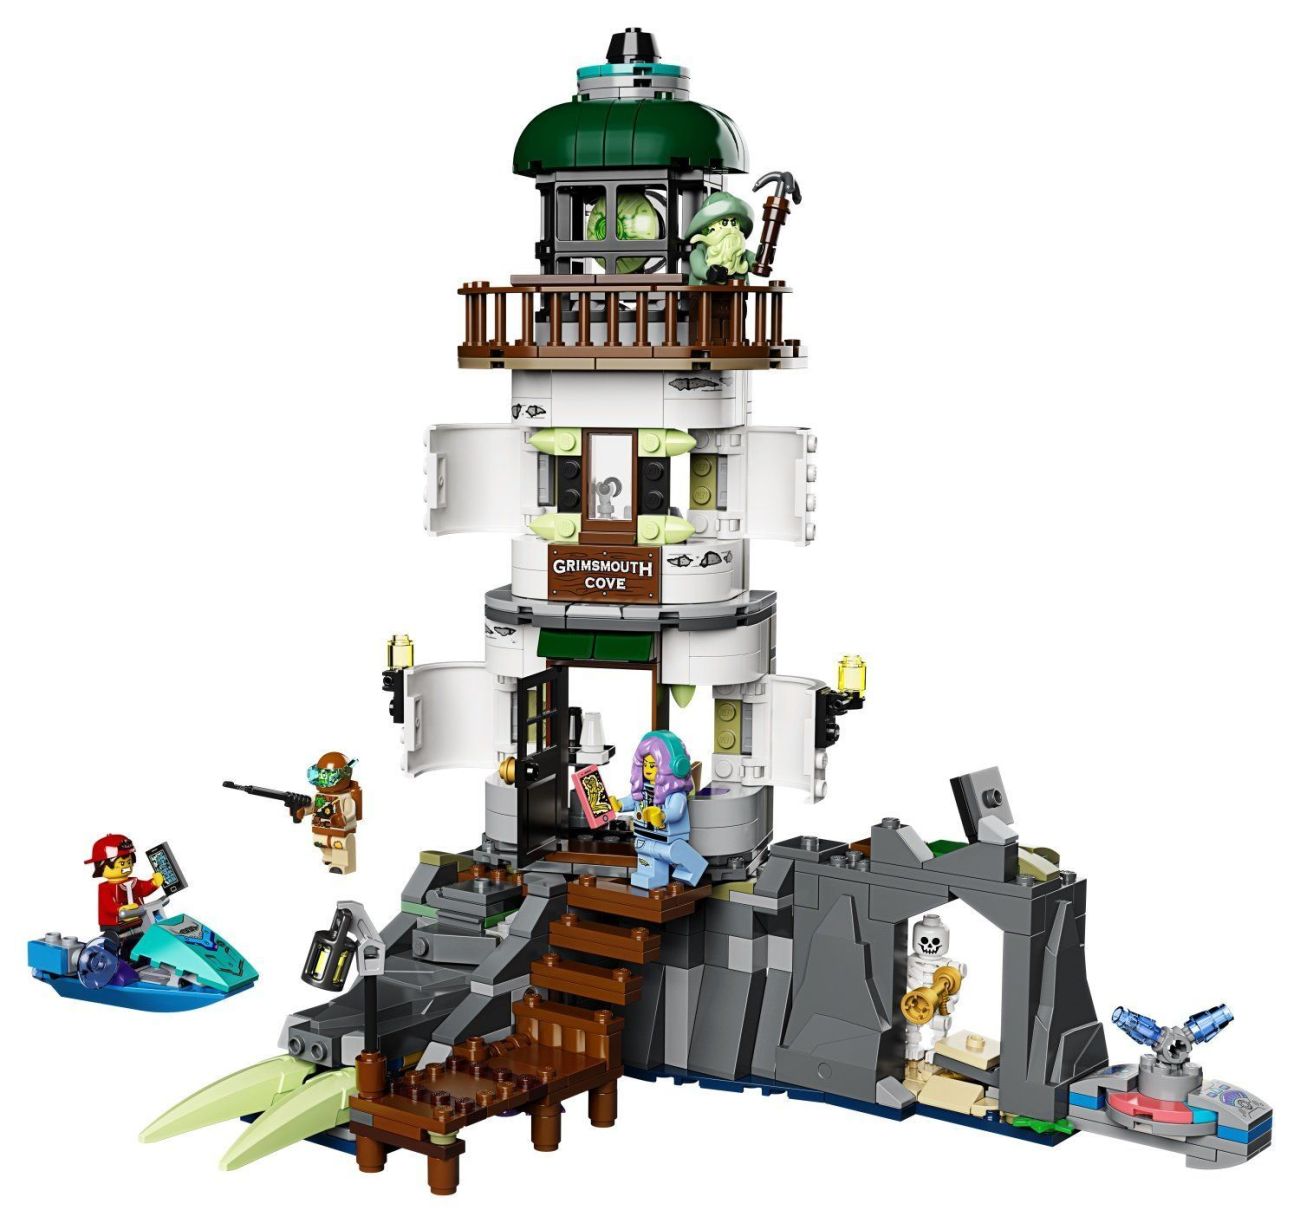 LEGO Hidden Side 2020: Neue Sets offiziell vorgestellt - Alle Bilder & Preise